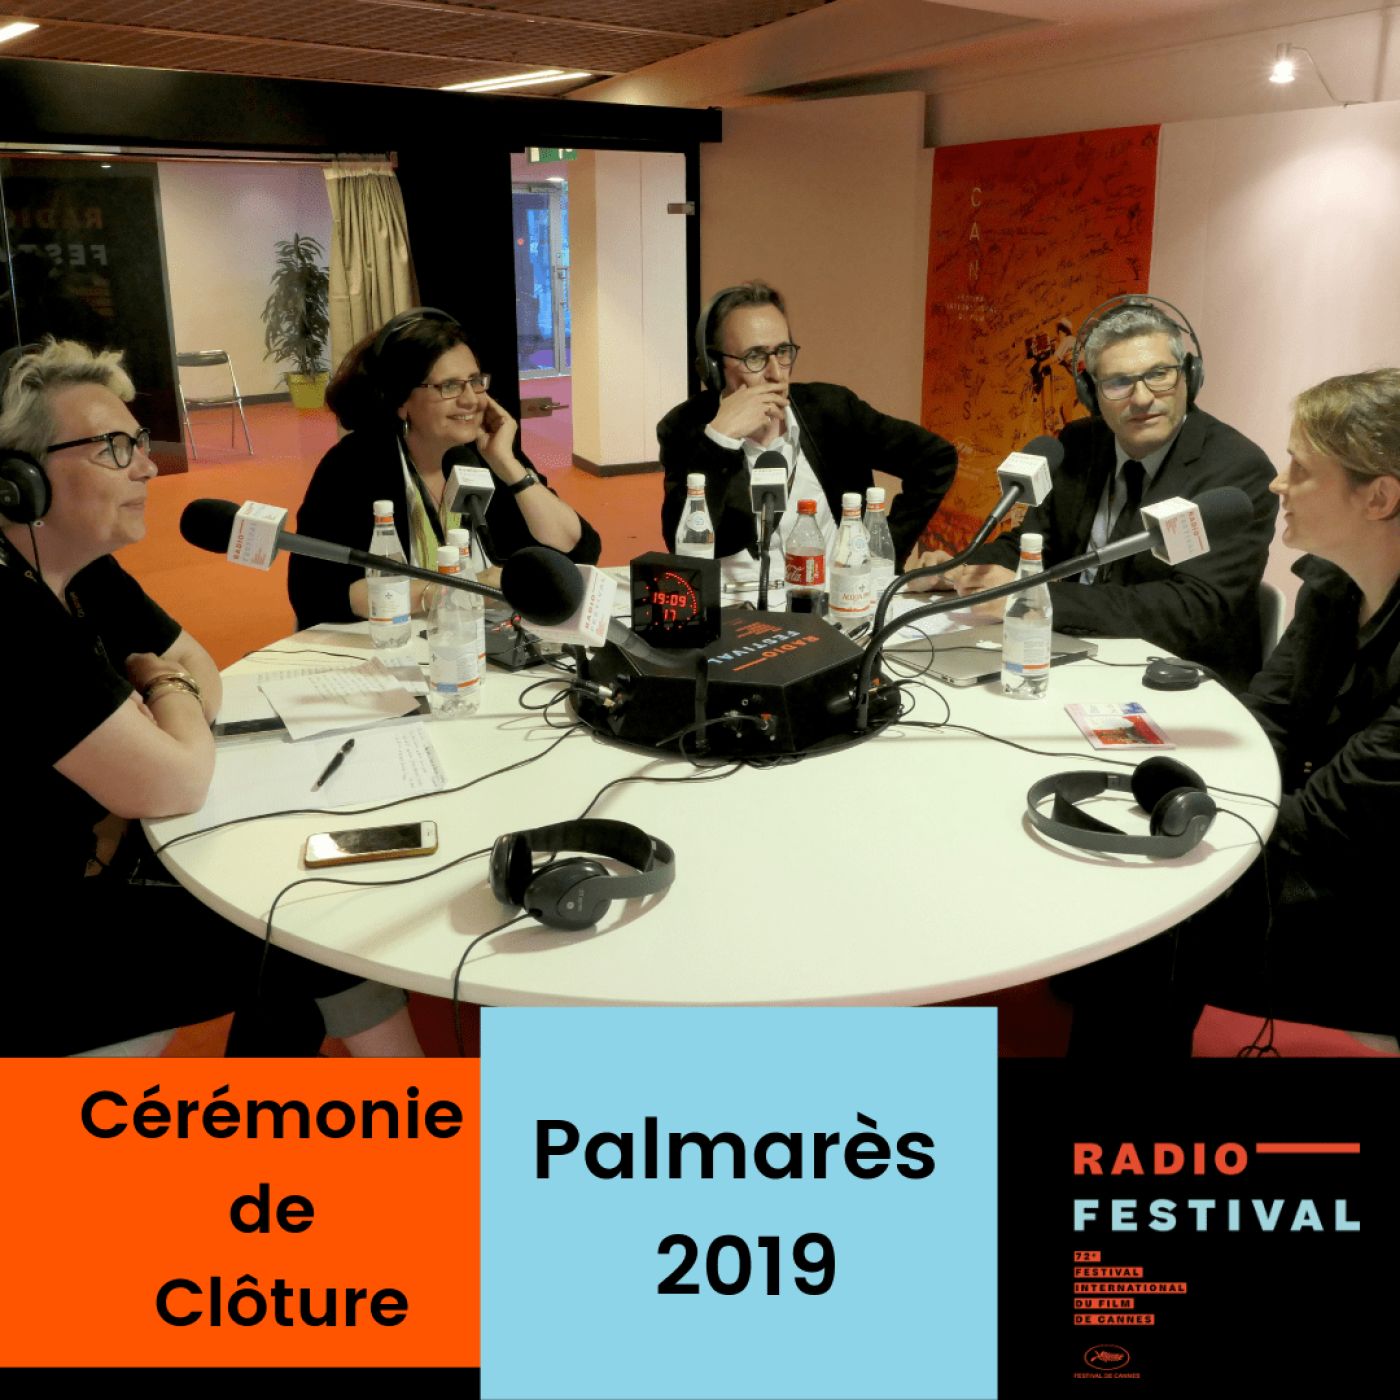 La Cérémonie de clôture et le Palmarès 2019 - 25 mai 2019